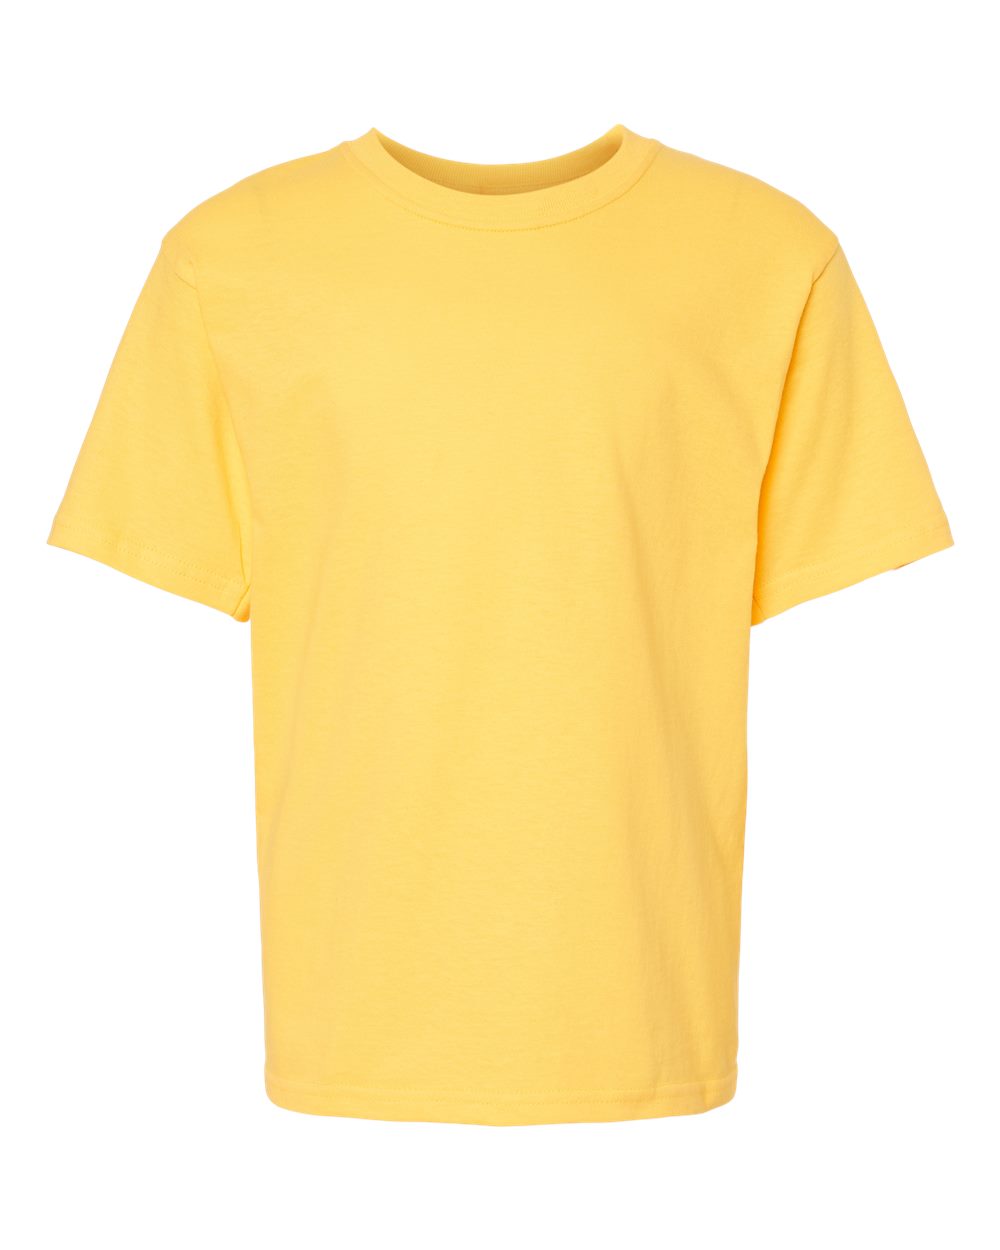 T-Shirt pour Enfant – M&O Unisexe non Personnalisé